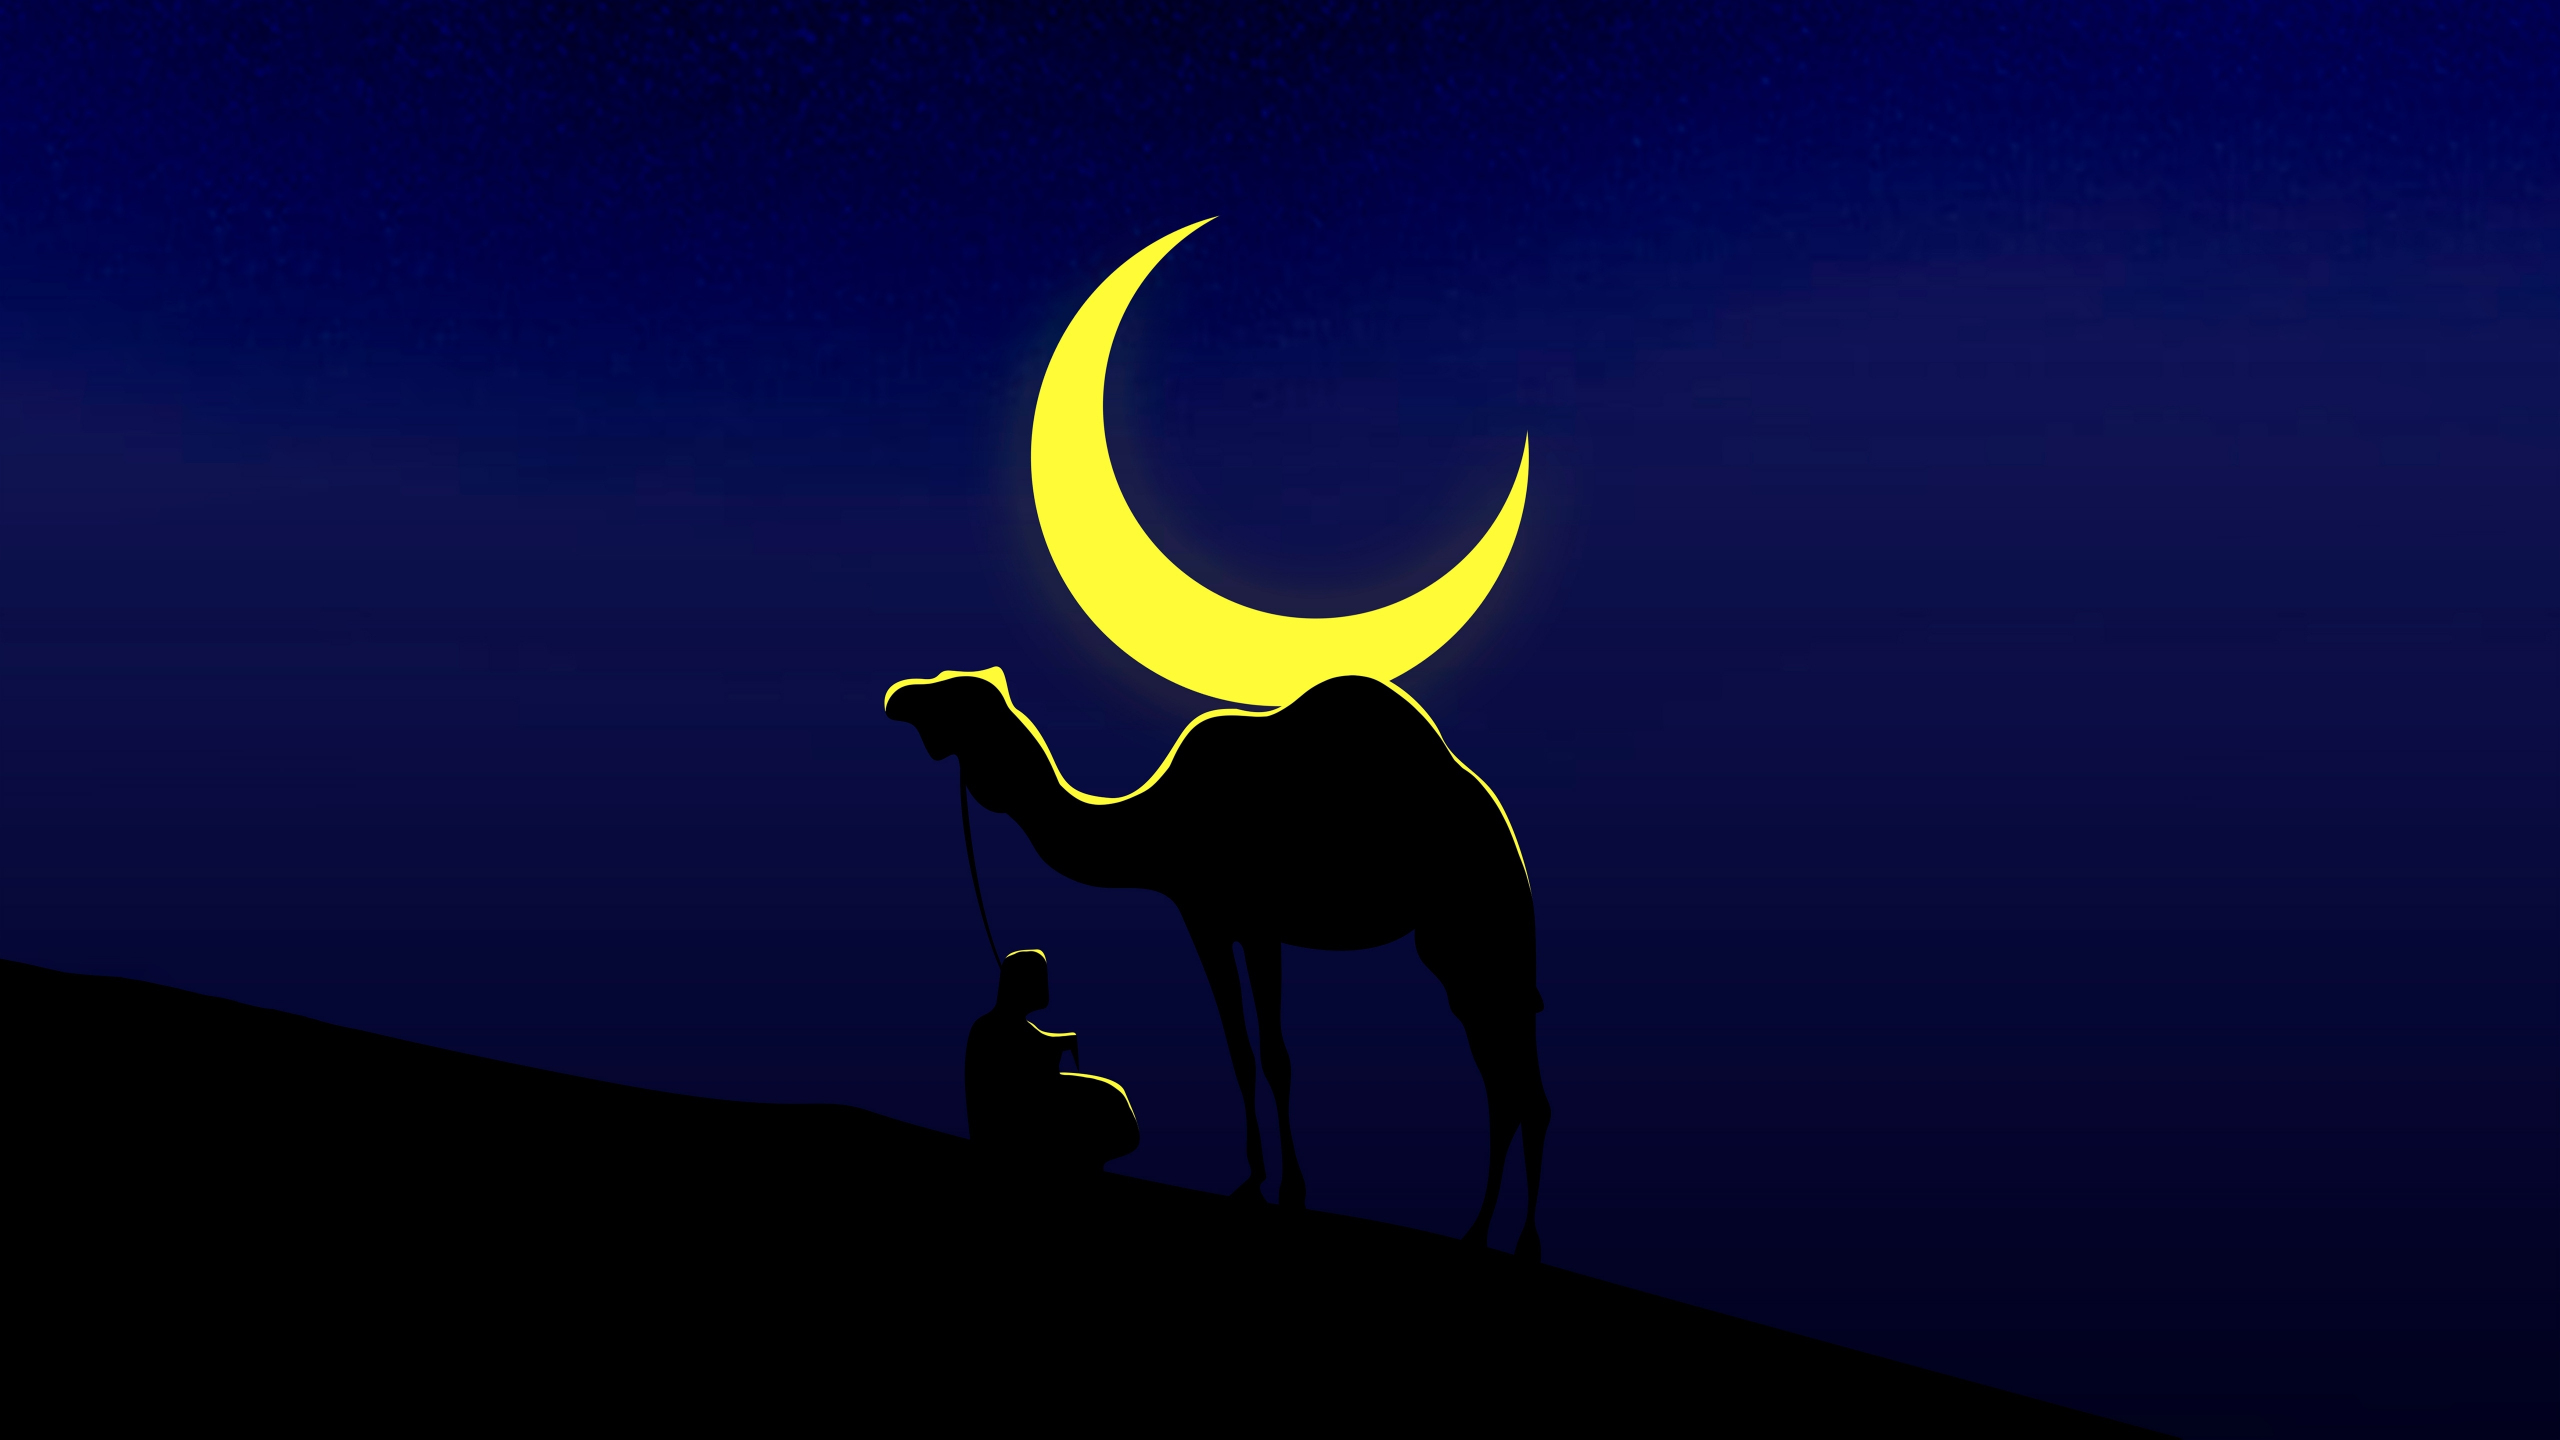 Camel and his master, moon, minimal, 2560x1440 wallpaper